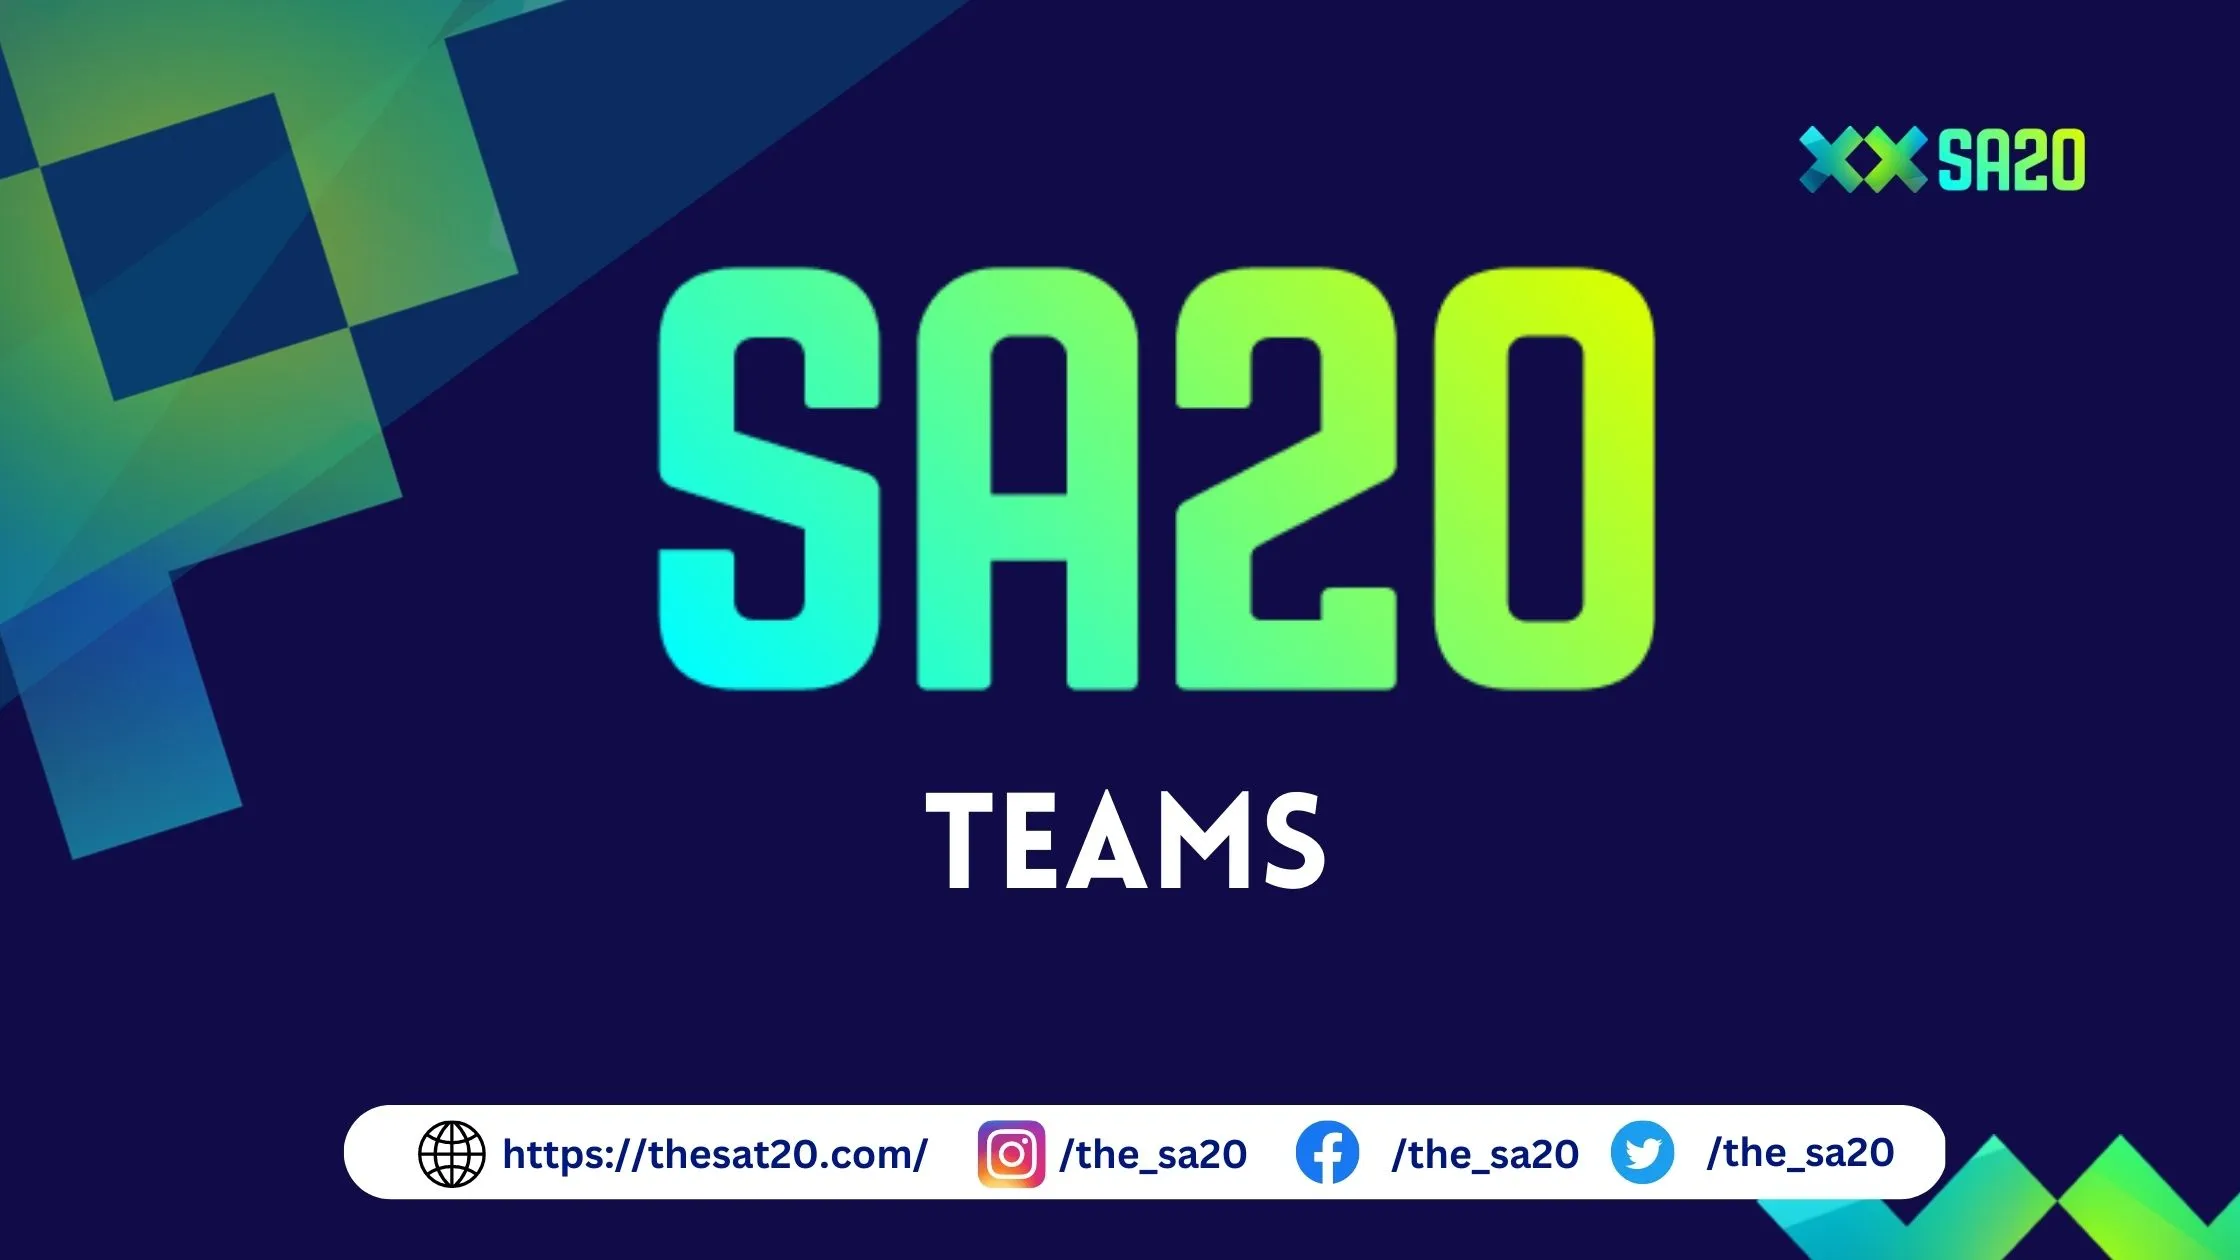 sa20 teams